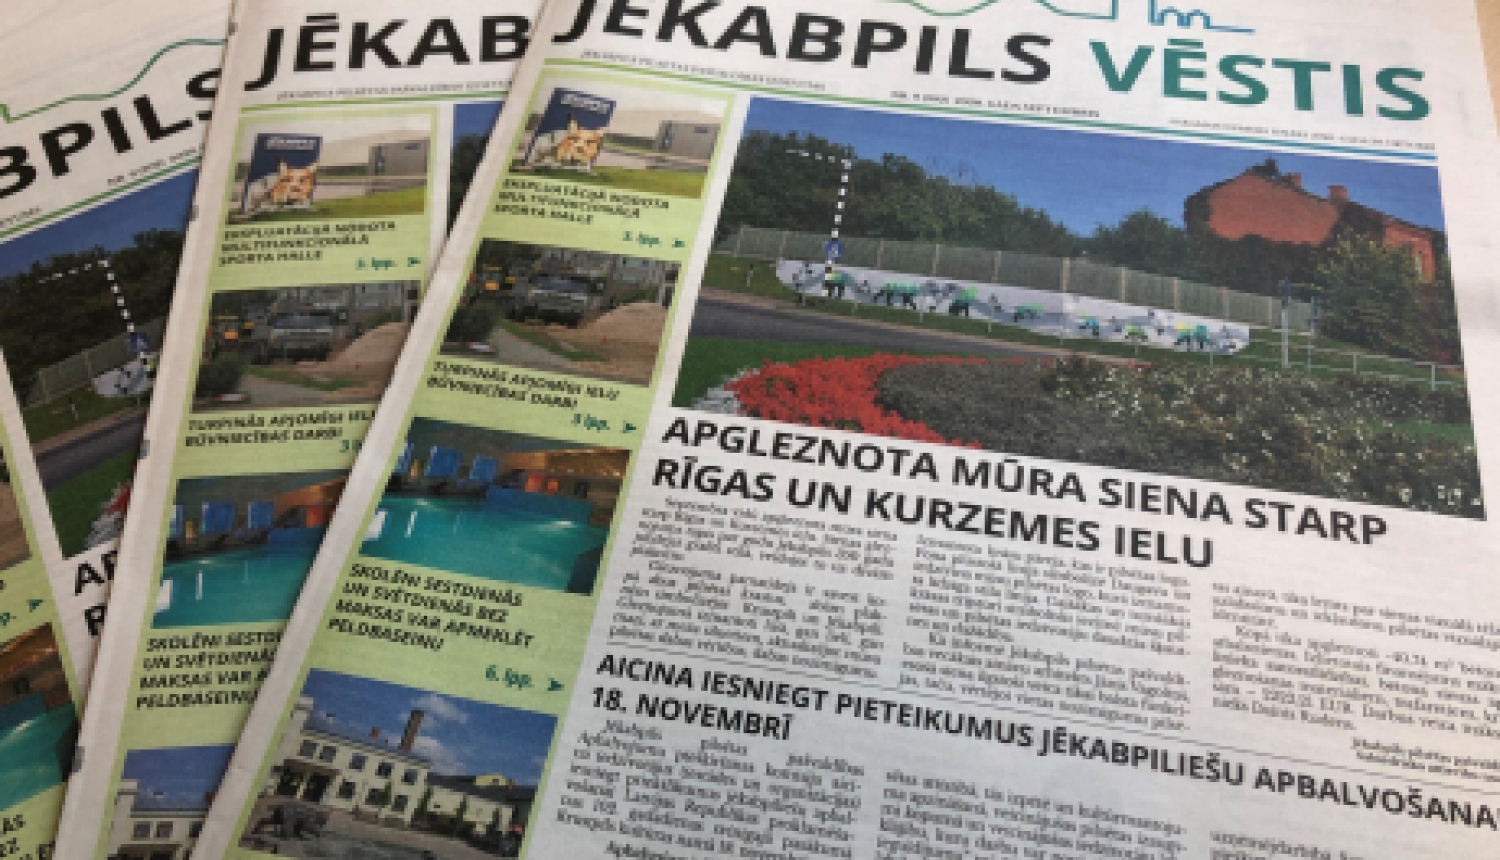 Izdots pašvaldības izdevuma “Jēkabpils vēstis” septembra numurs